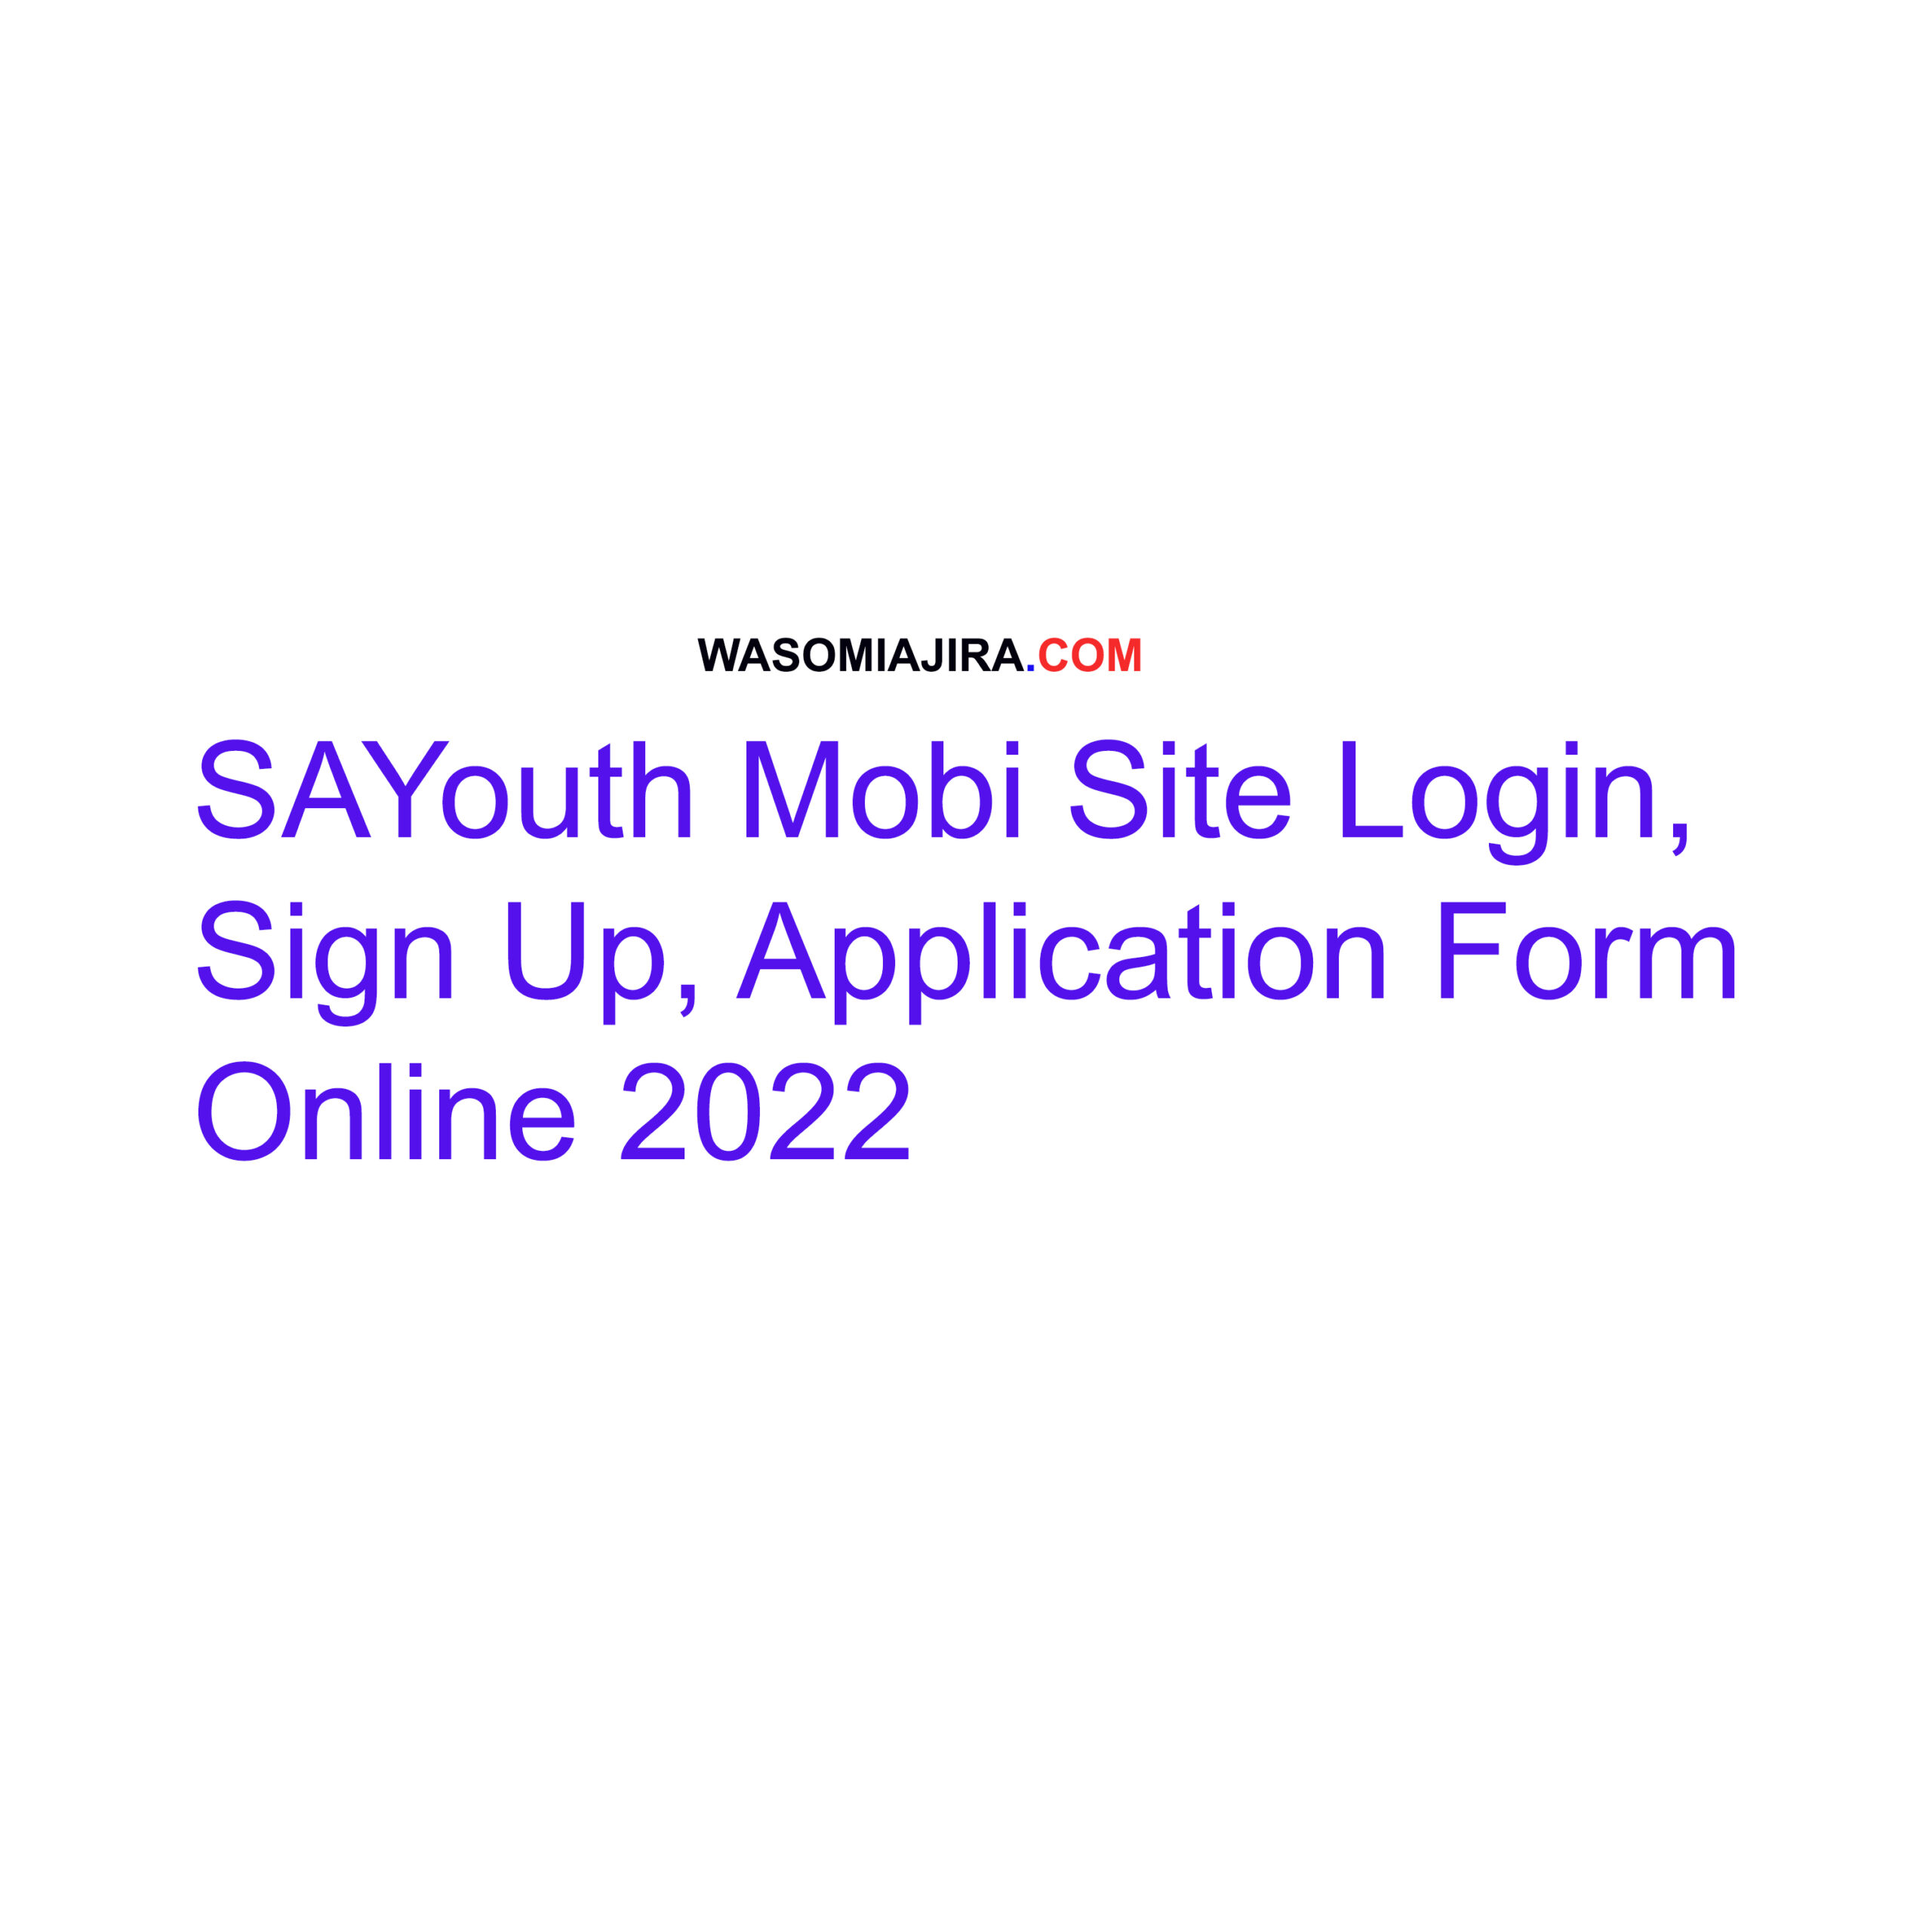 SAYouth Mobi Site Login,Sign Up, Application Form Online 2022